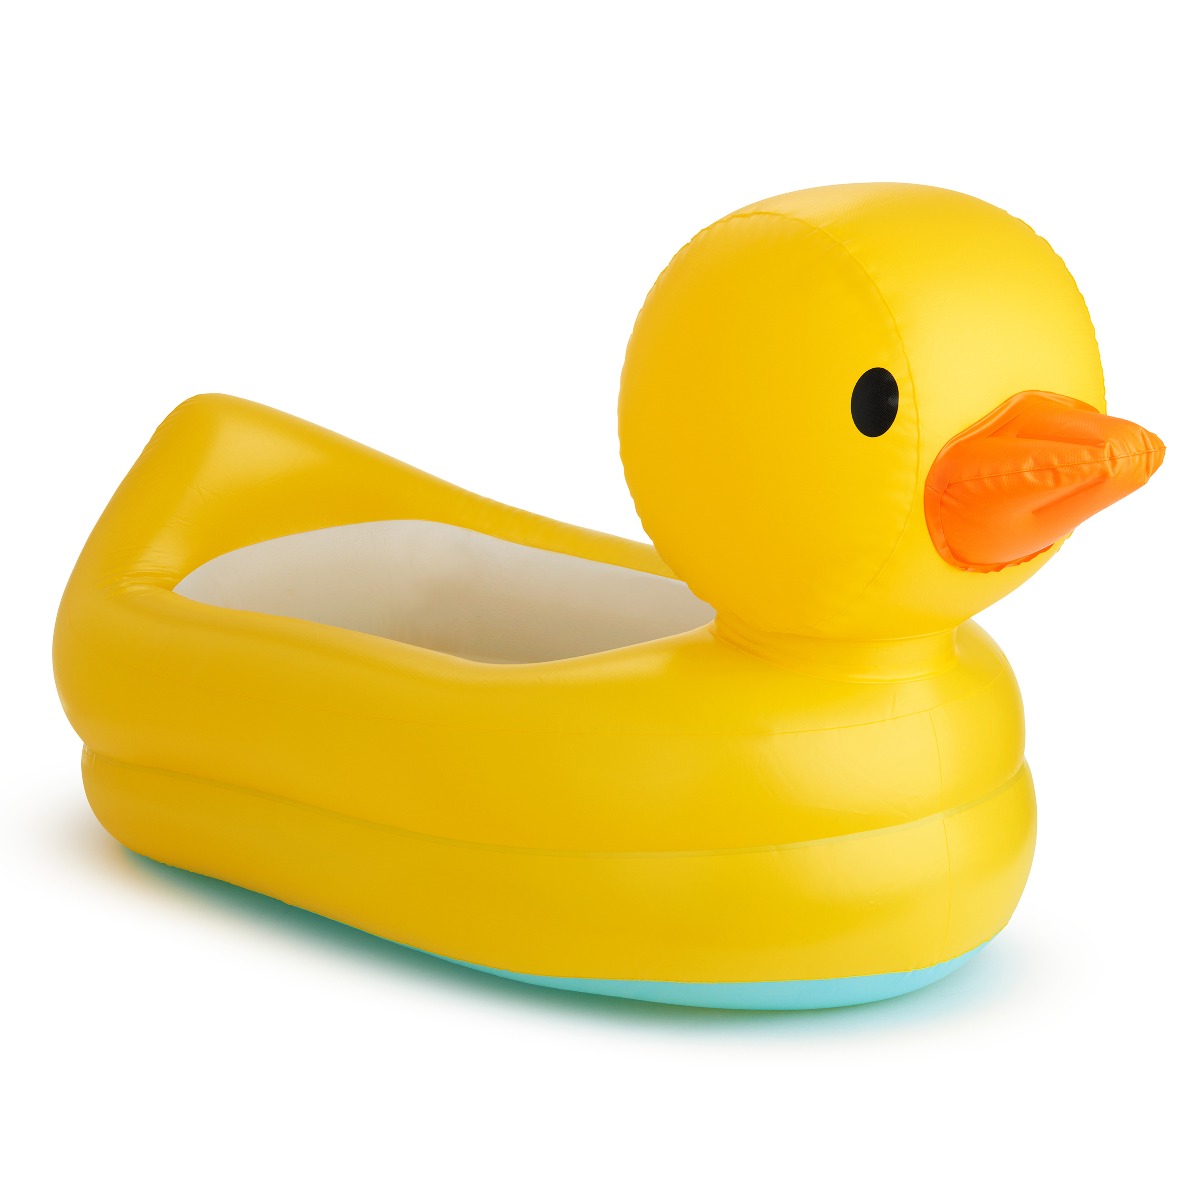 Bañera de pista de pato para bebé, herramienta de juegos de agua